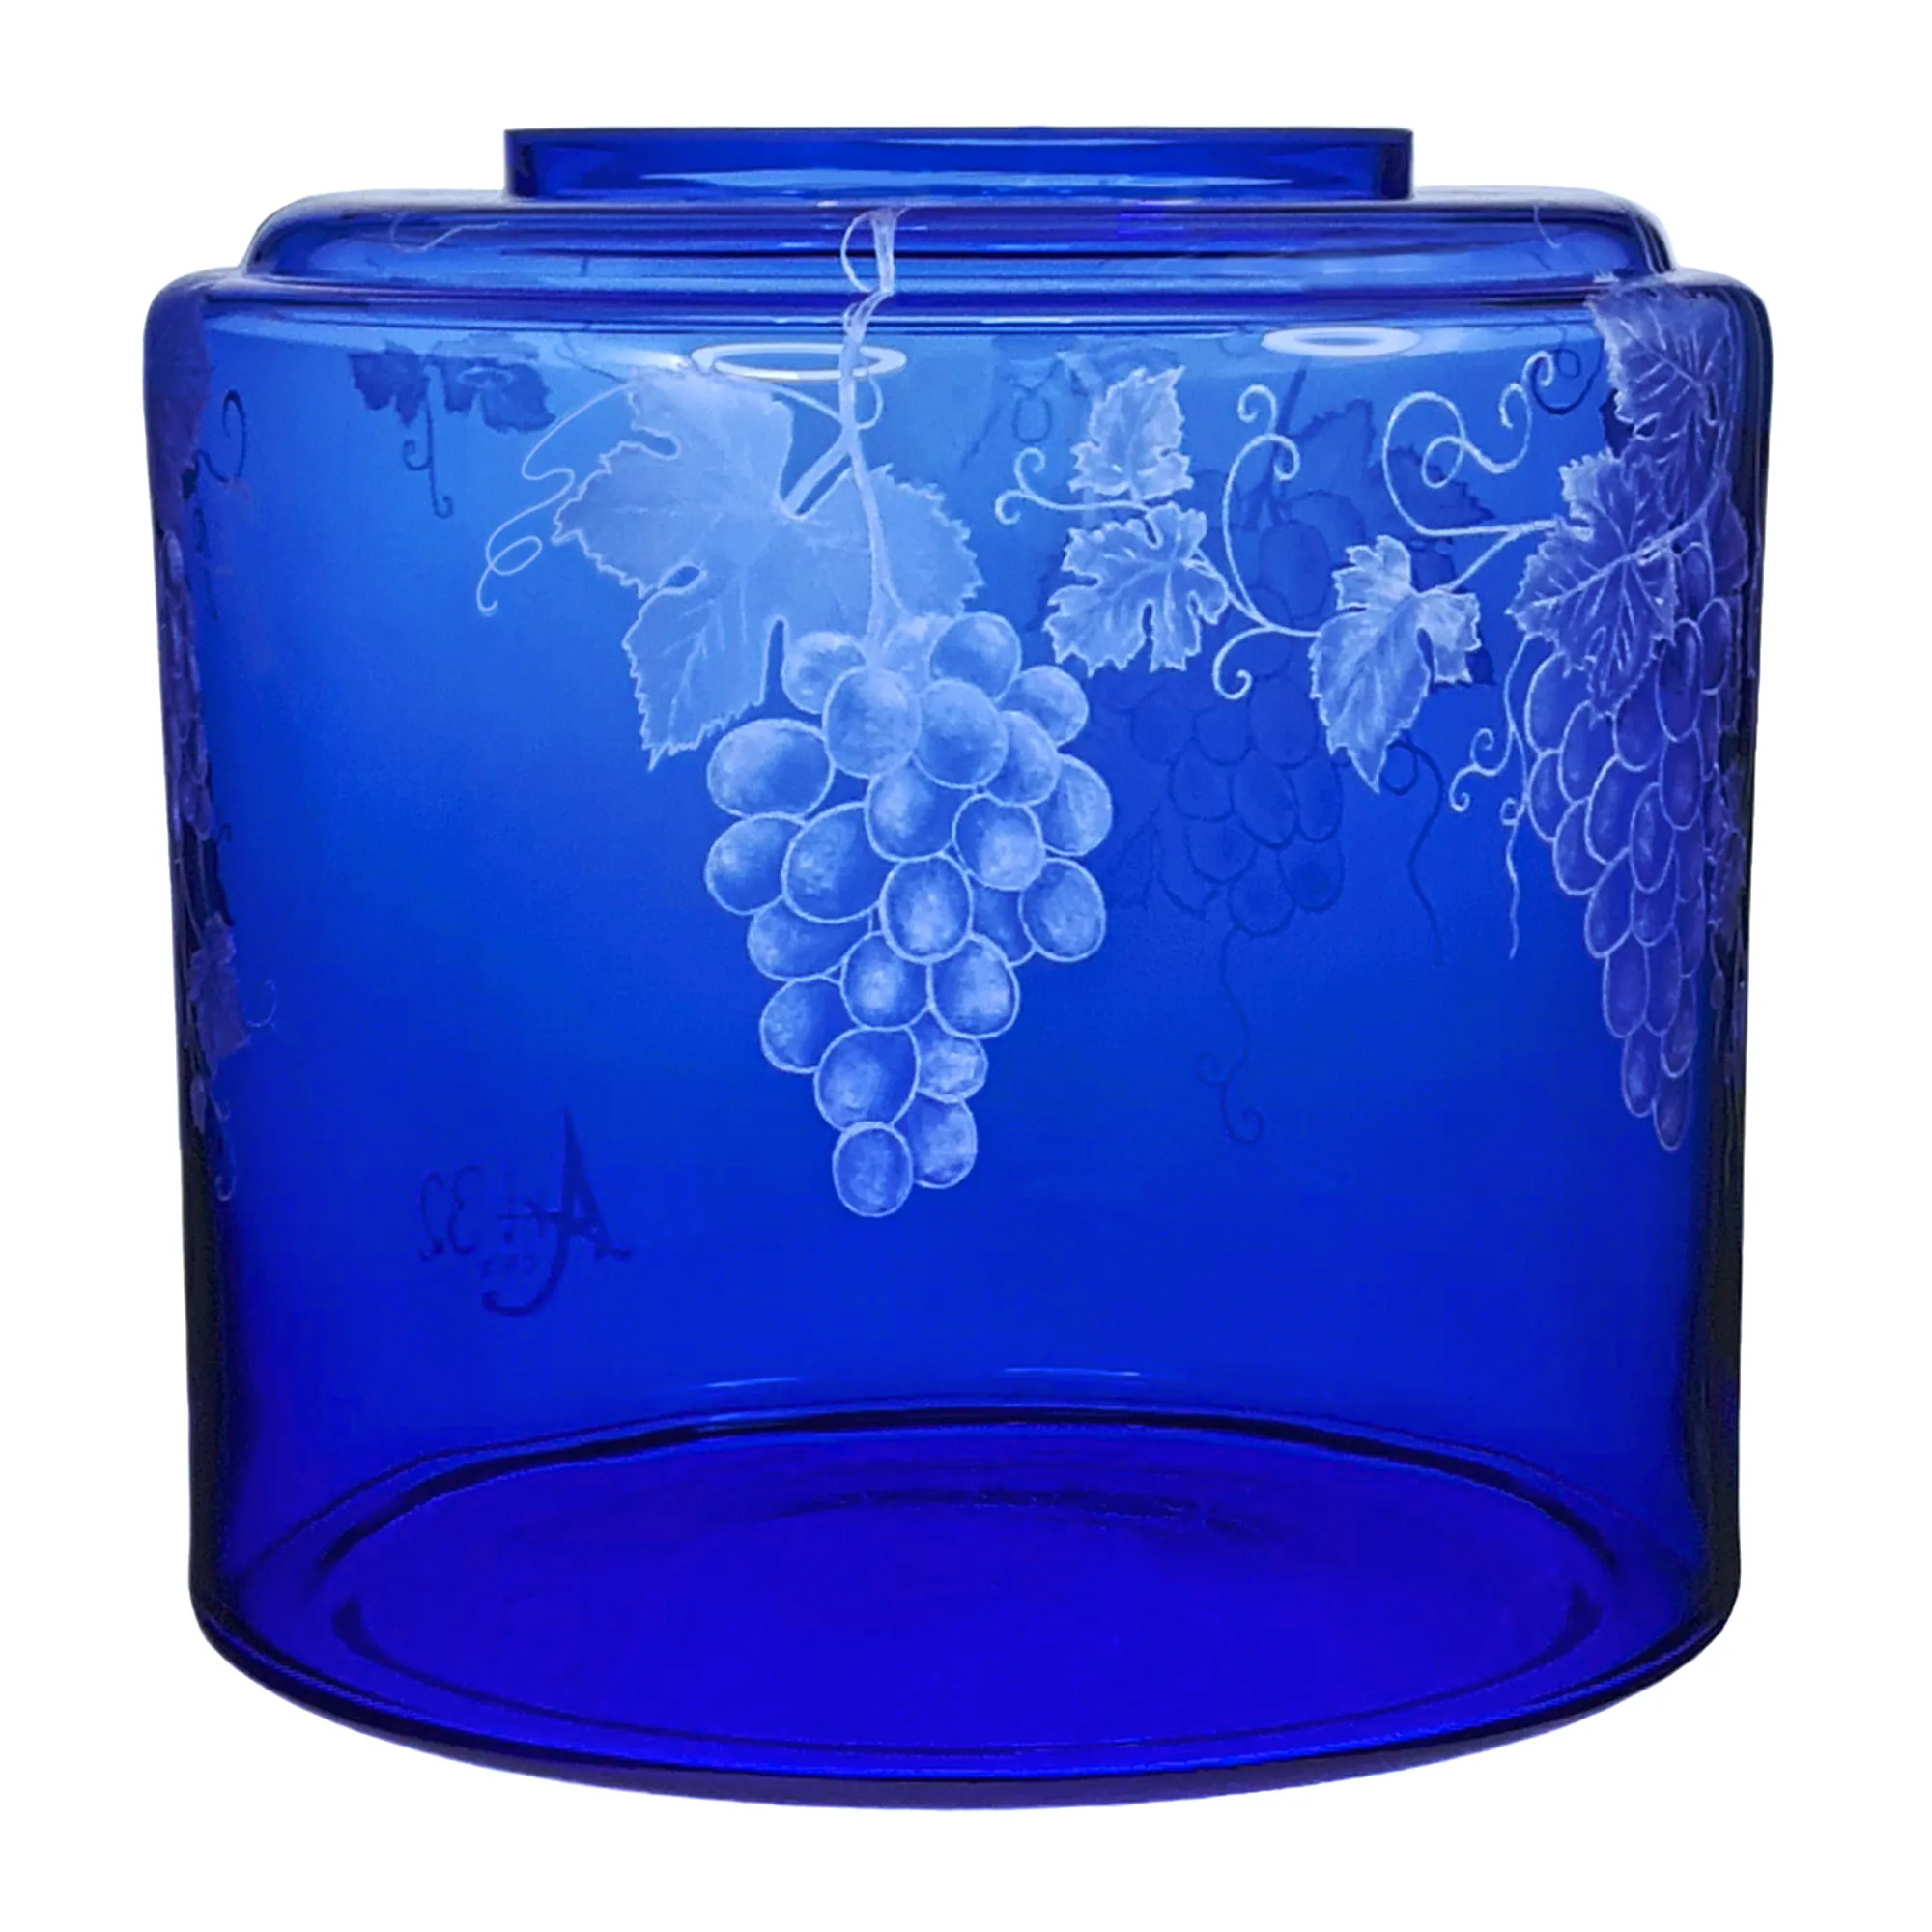 Vorratstank für einen Acala Wasserfilter Mini mit einer Handgravur. Die Gravur zeigt, auf blauem Glas, Traubenranken und Blätter.Ansicht von links.